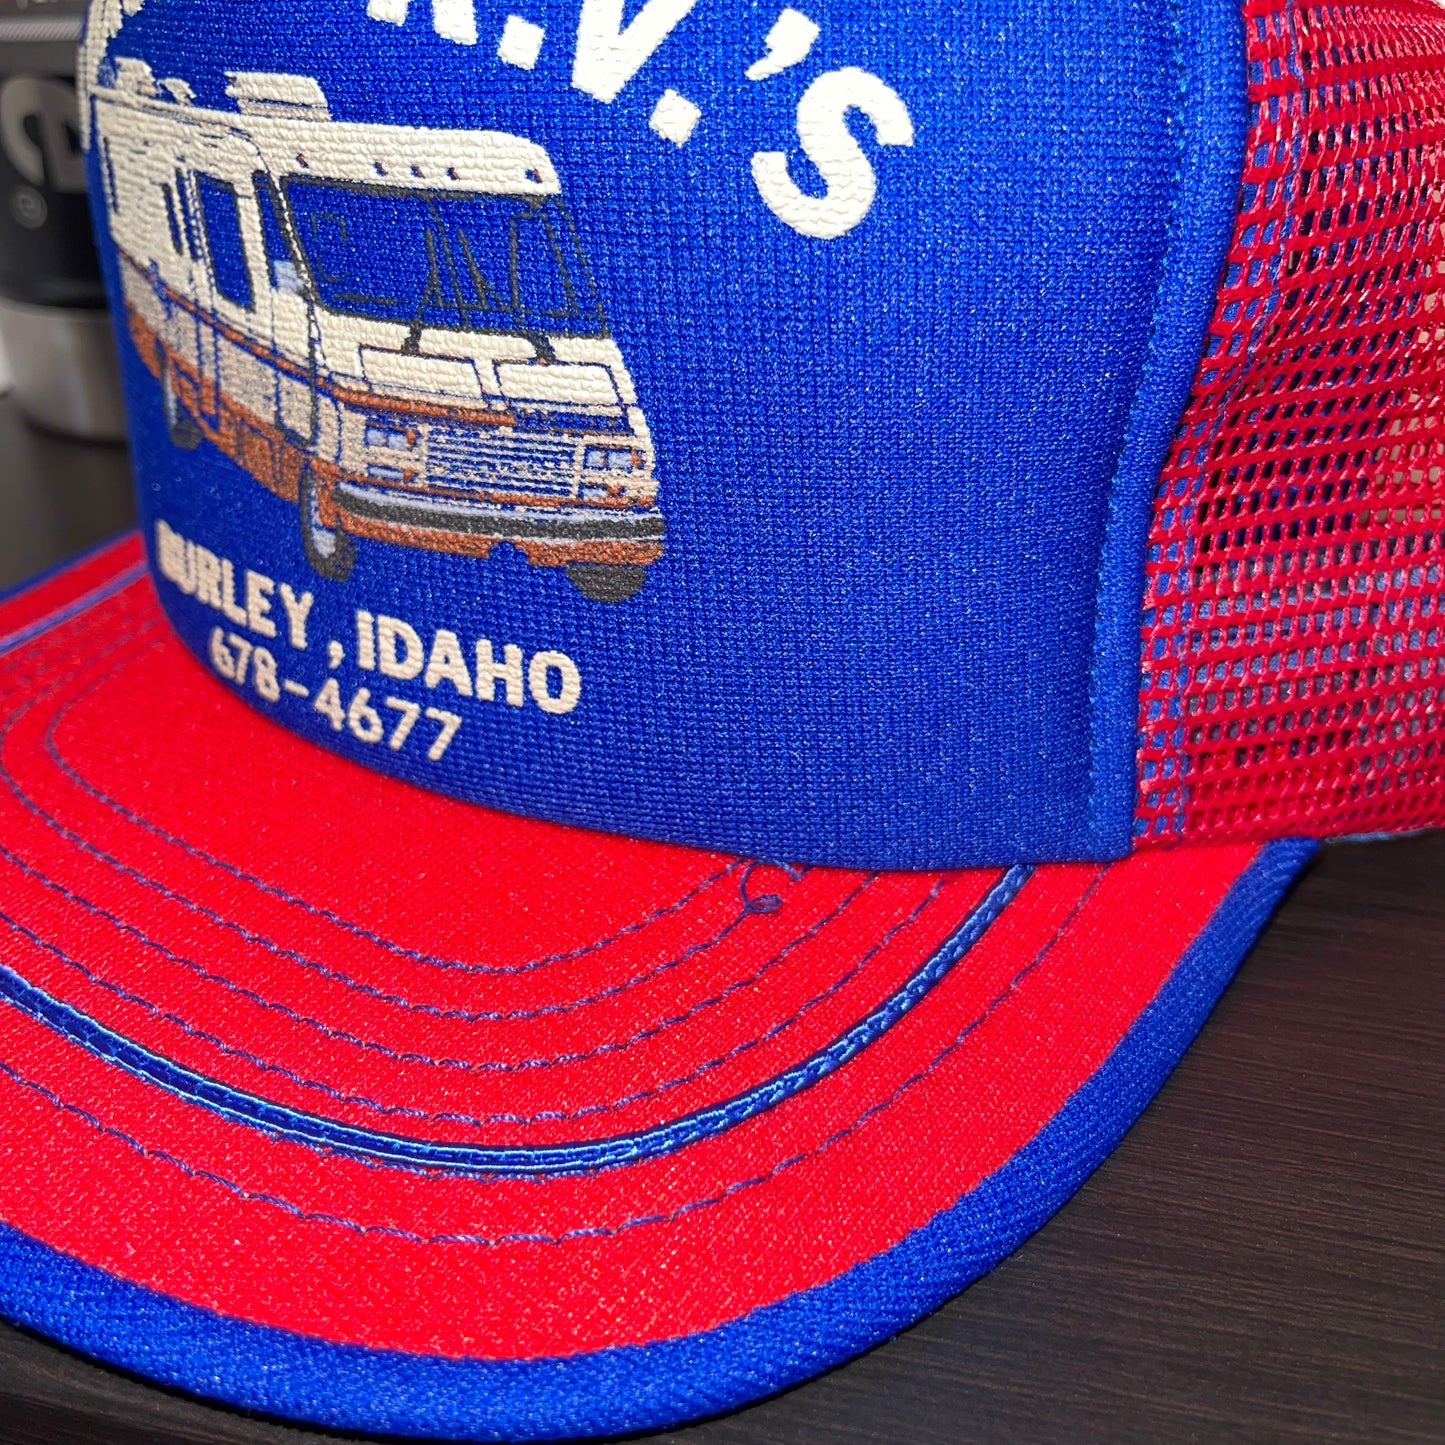 Vintage Luxury R.V.’s Burley Idaho Trucker Hat